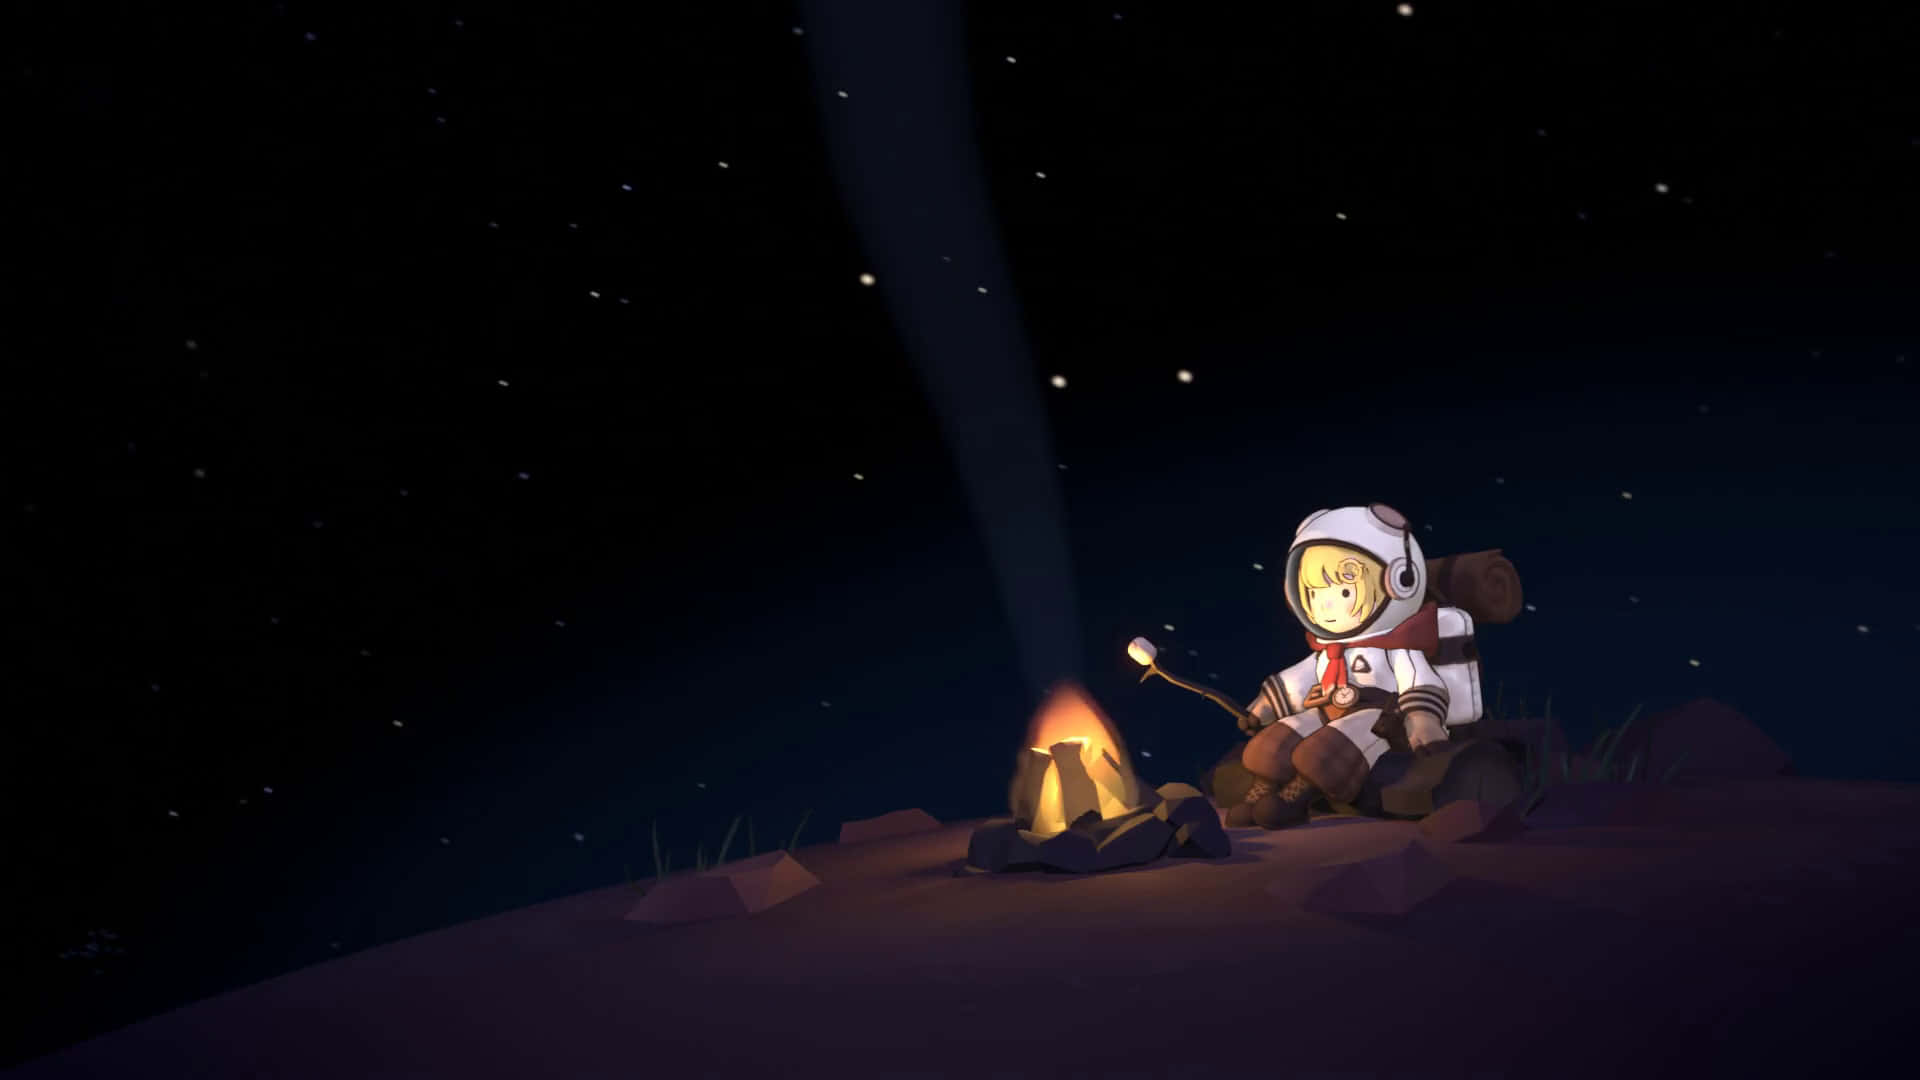 Astronautade Dibujos Animados Basado En Mundos Exteriores. Fondo de pantalla